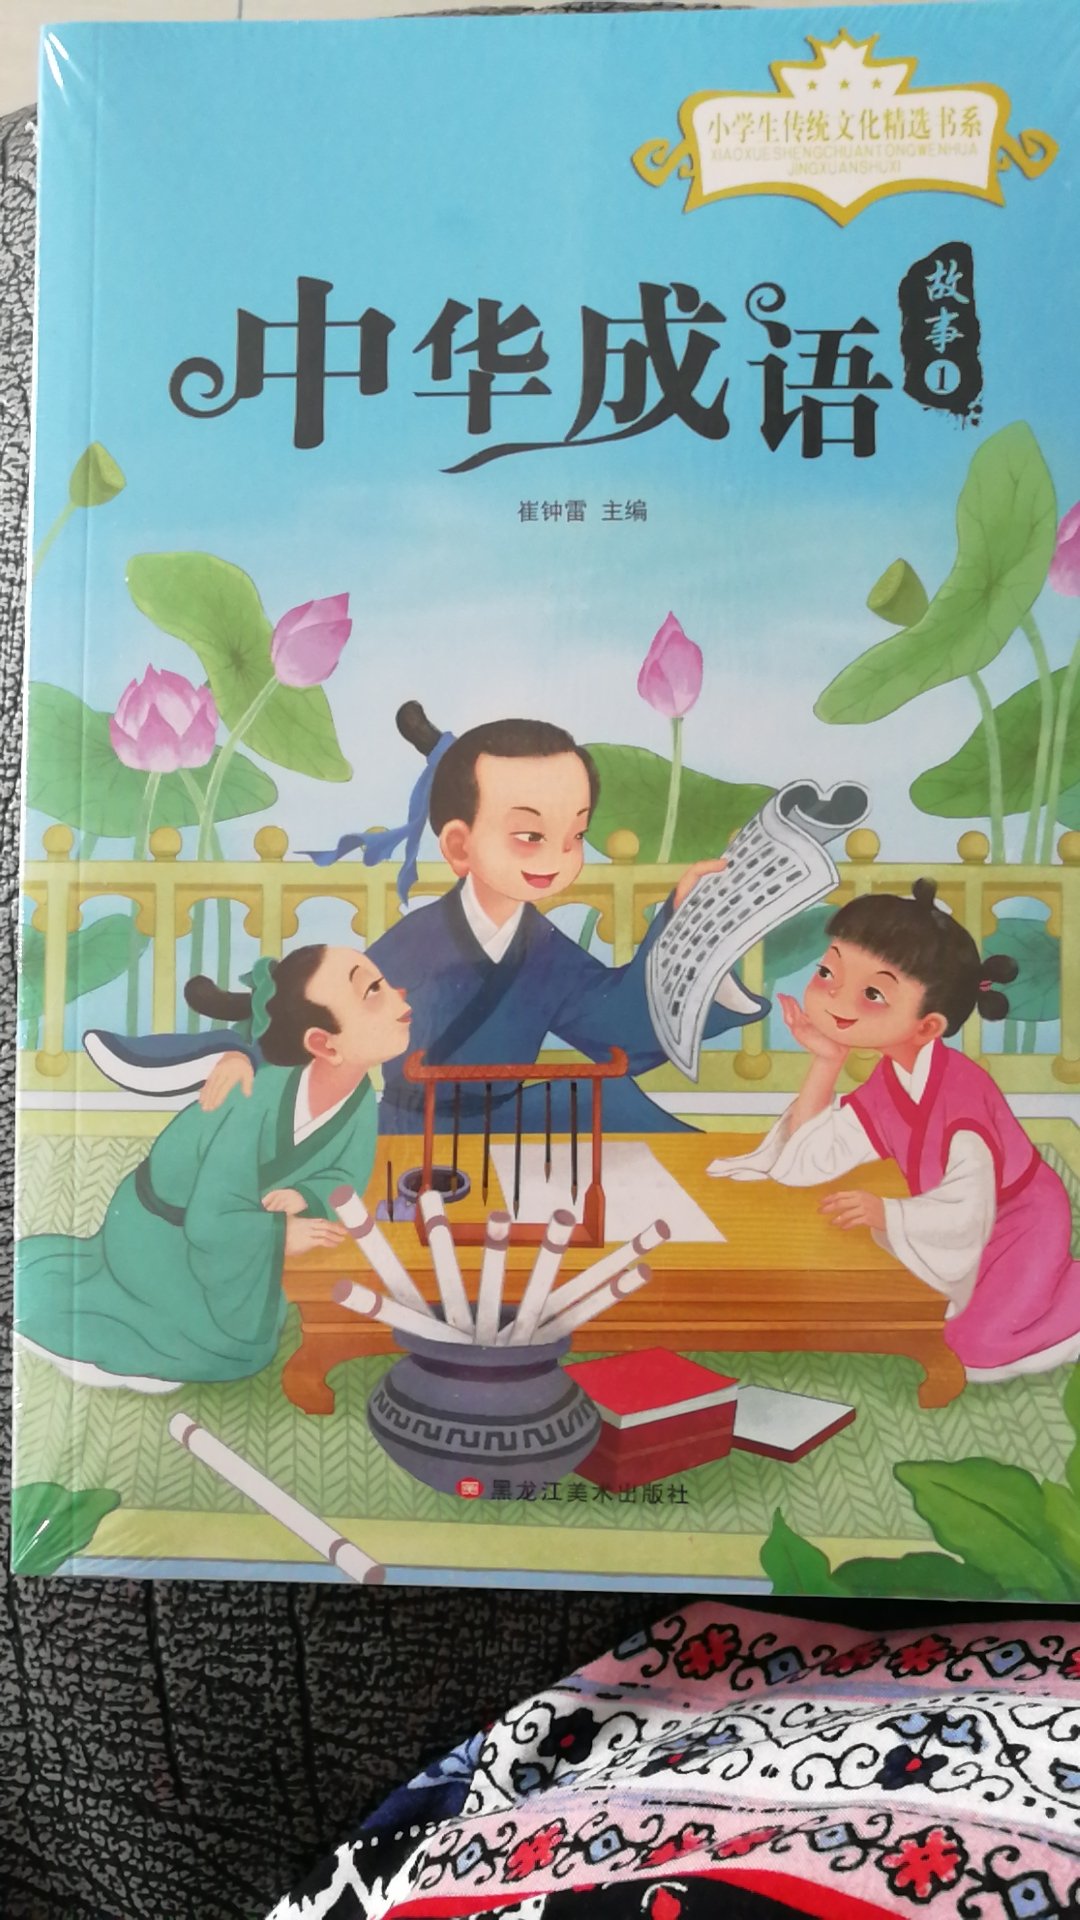 中国人独有的成语一定要给孩子读，没有为什么！注音版孩子自己可以拼读！一直正品保证！到货速度很快！配送员服务态度也超级好！